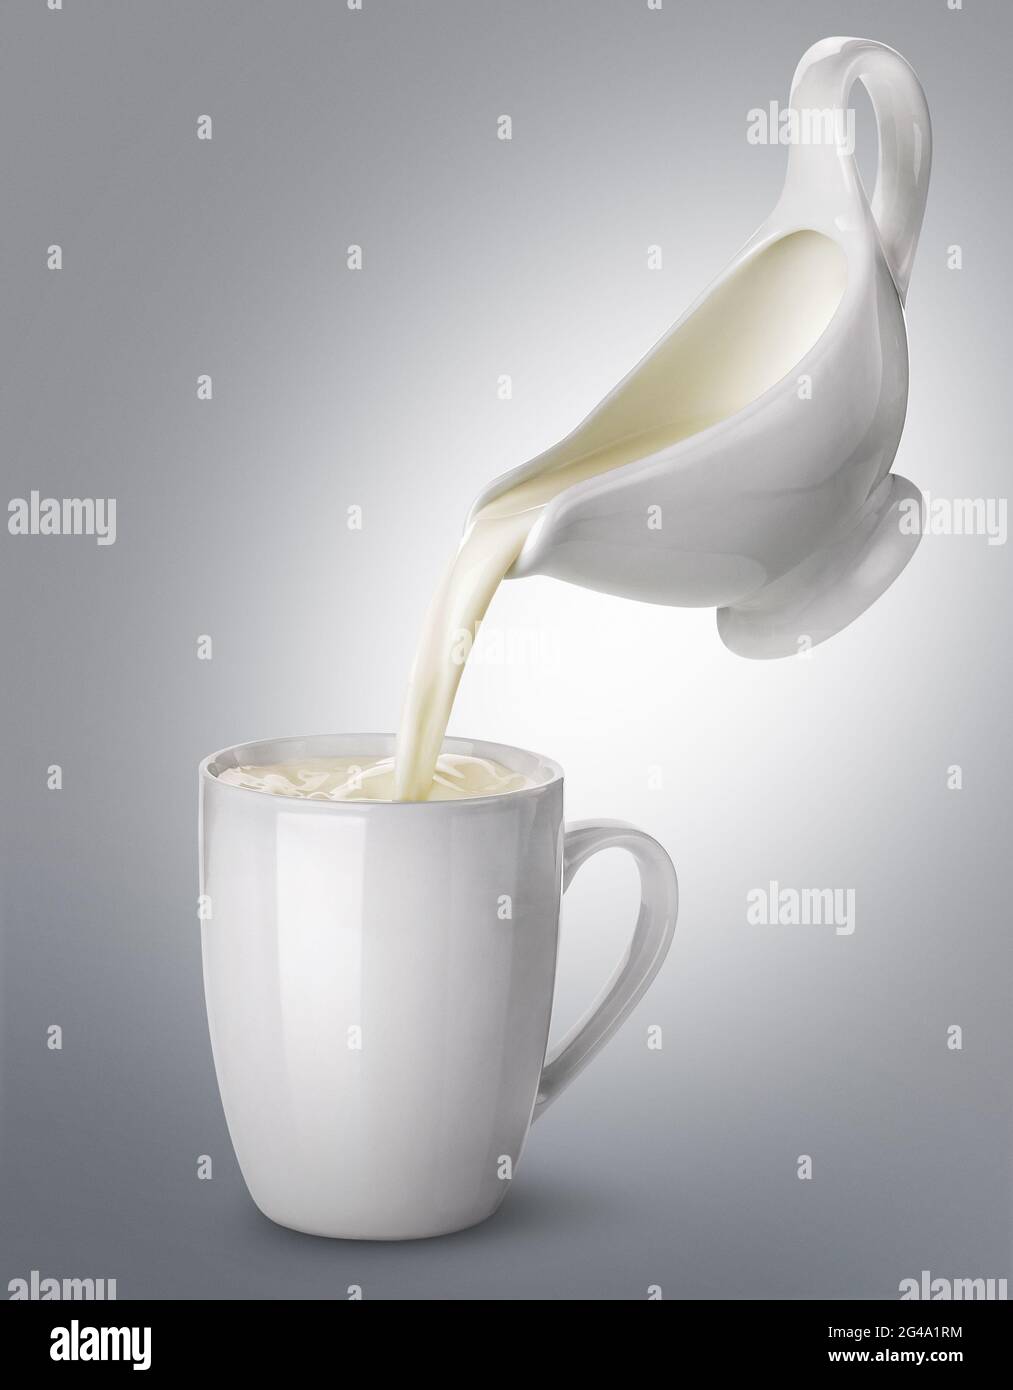 Milch gießen, flüssige Sahne, Milch und Milchprodukten Konzept für die Verpackung Stockfoto